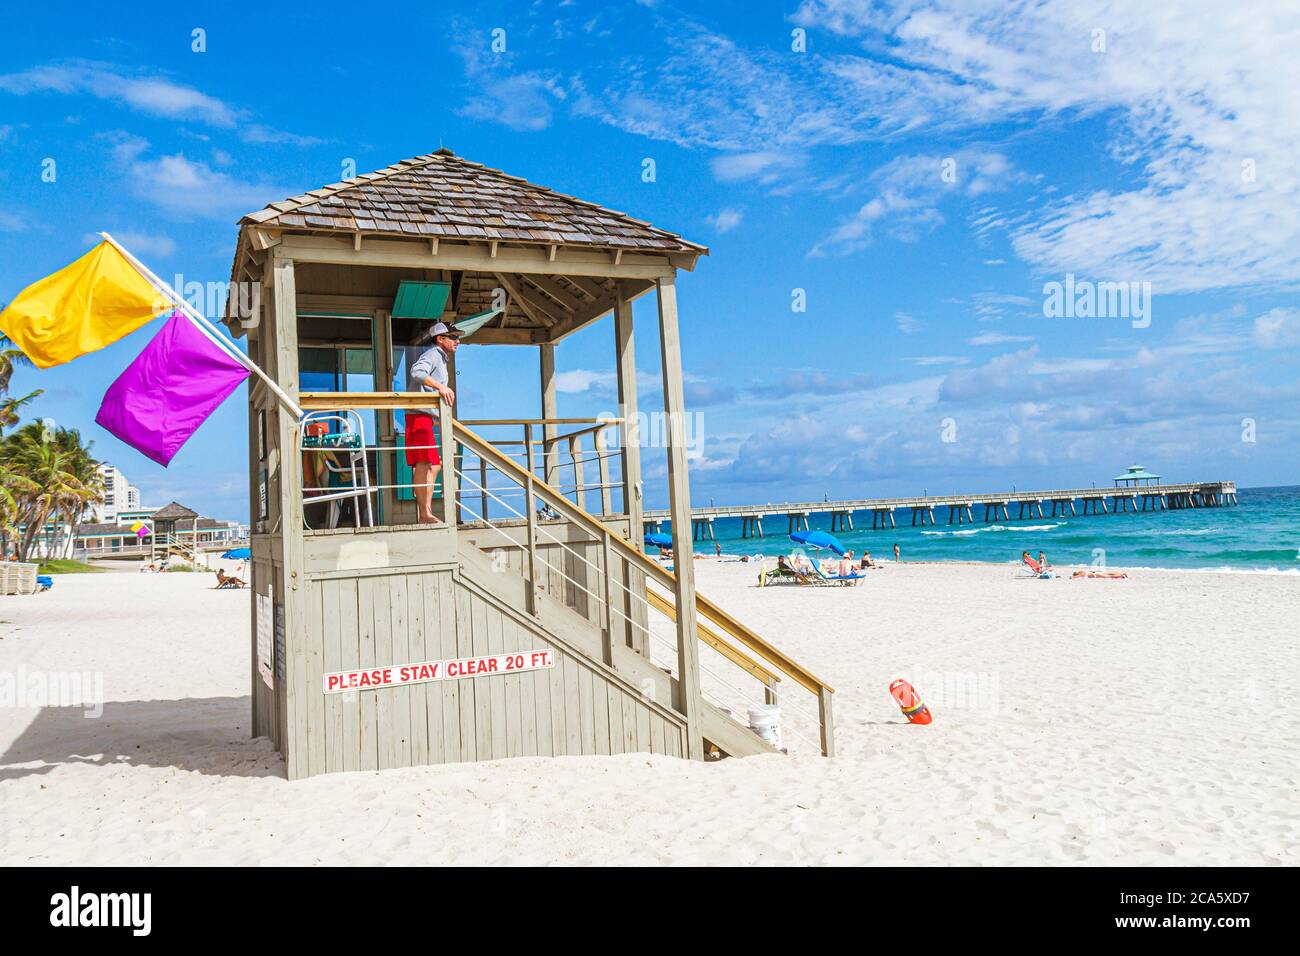 Deerfield Beach Florida, bagnino, stazione, capanna, sabbia, pubblico, costa dell'oceano Atlantico, riva, surf, solarium, molo di pesca Deerfield Beach International, Foto Stock